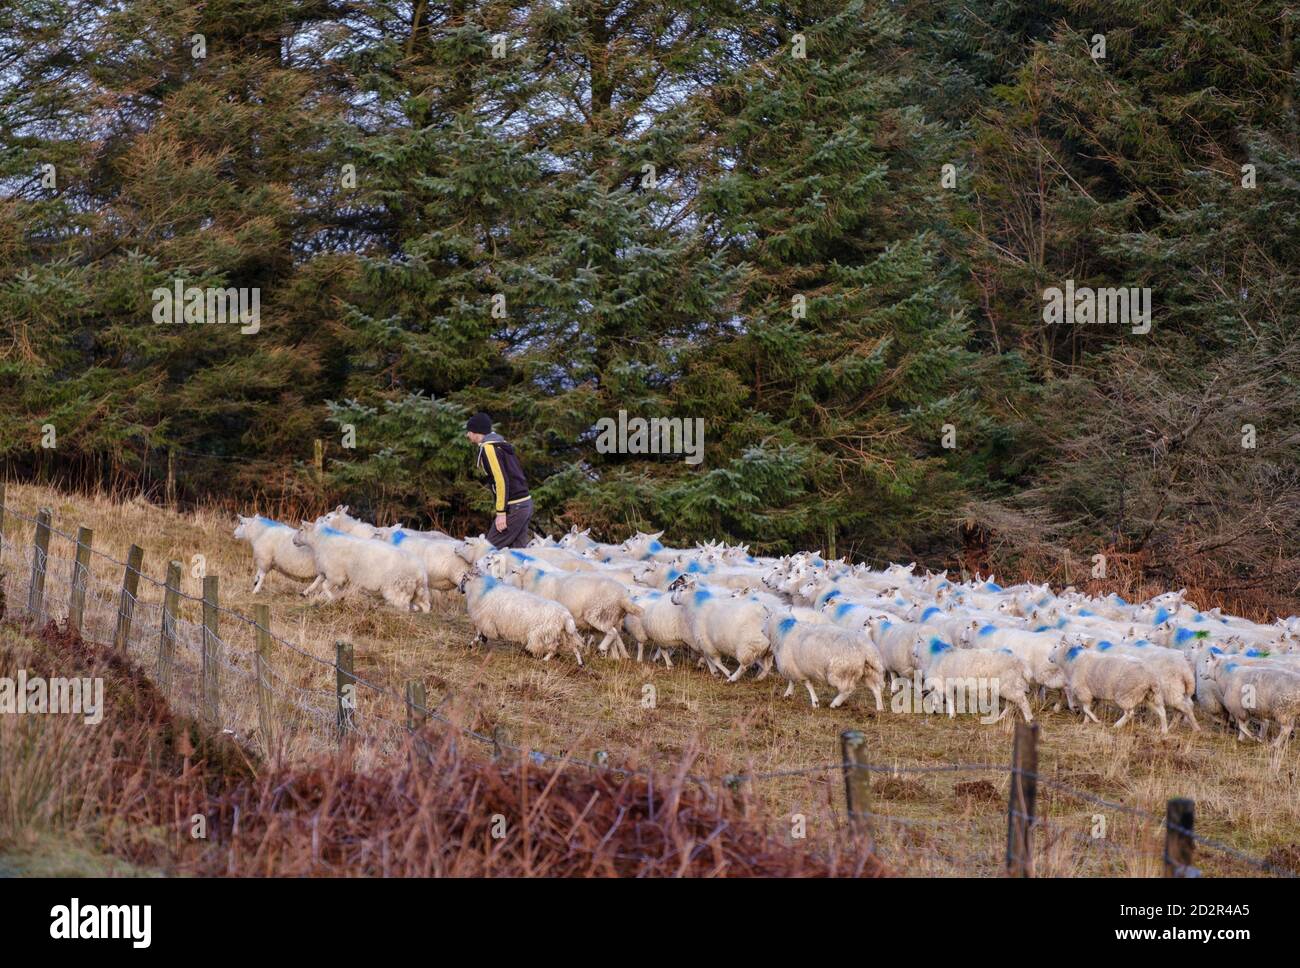 rebaño de ovejas, Skinidin, Loch Erghallan, isla de Skye, Highlands, Escocia, Reino Unido Stock Photo